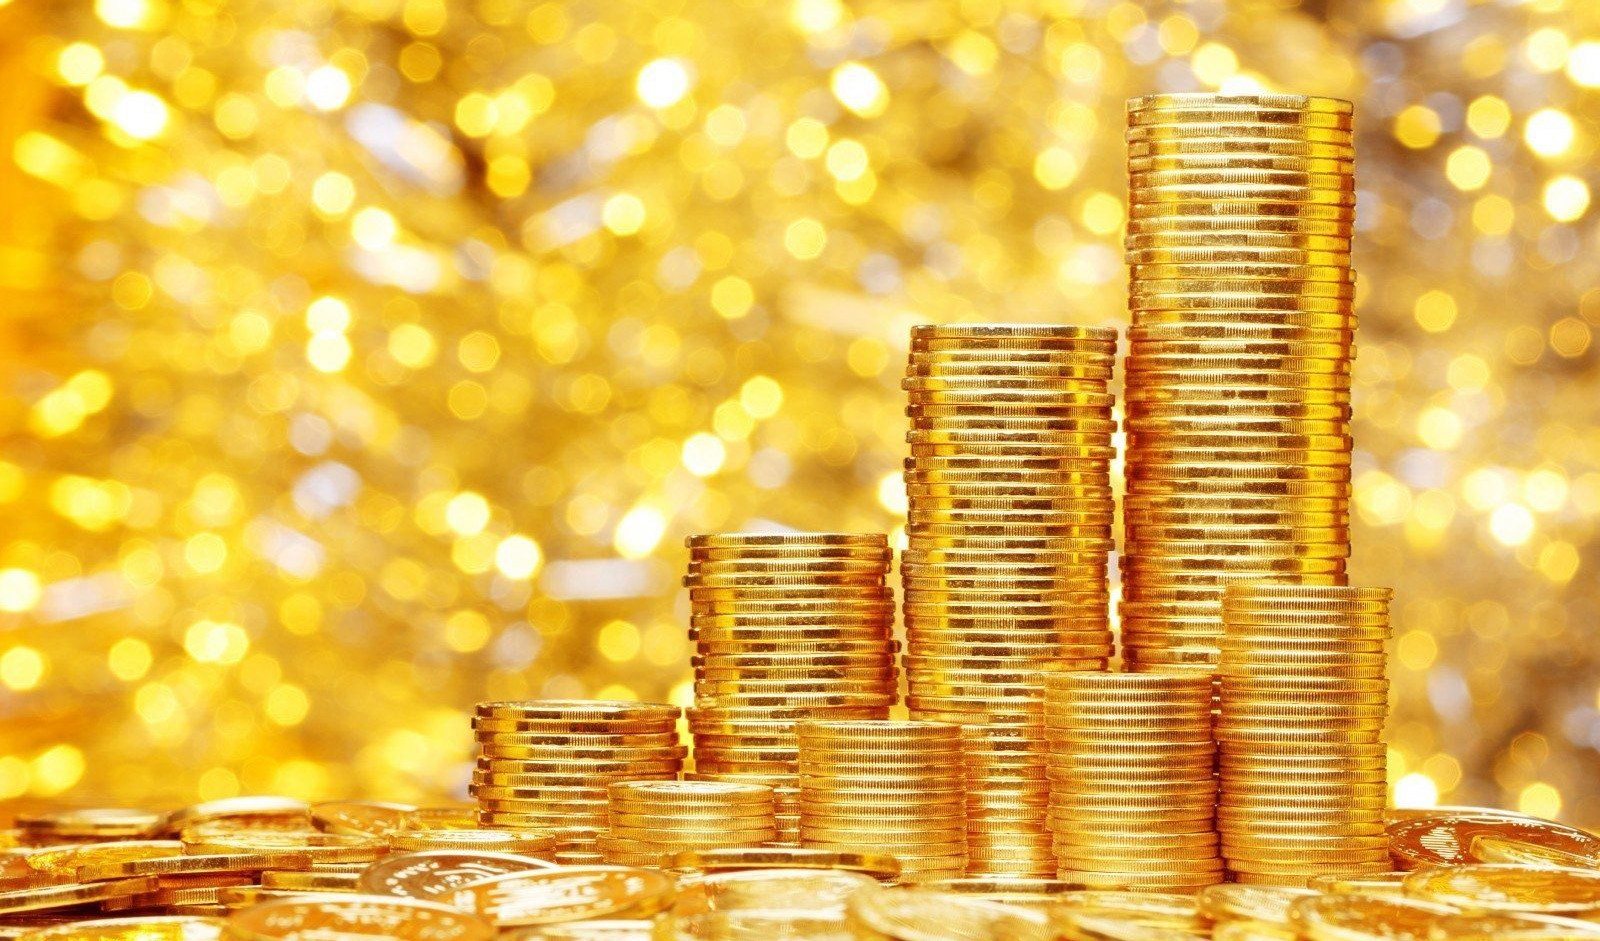 روند نزولی قیمت سکه و طلا متاثر از کاهش نرخ دلار